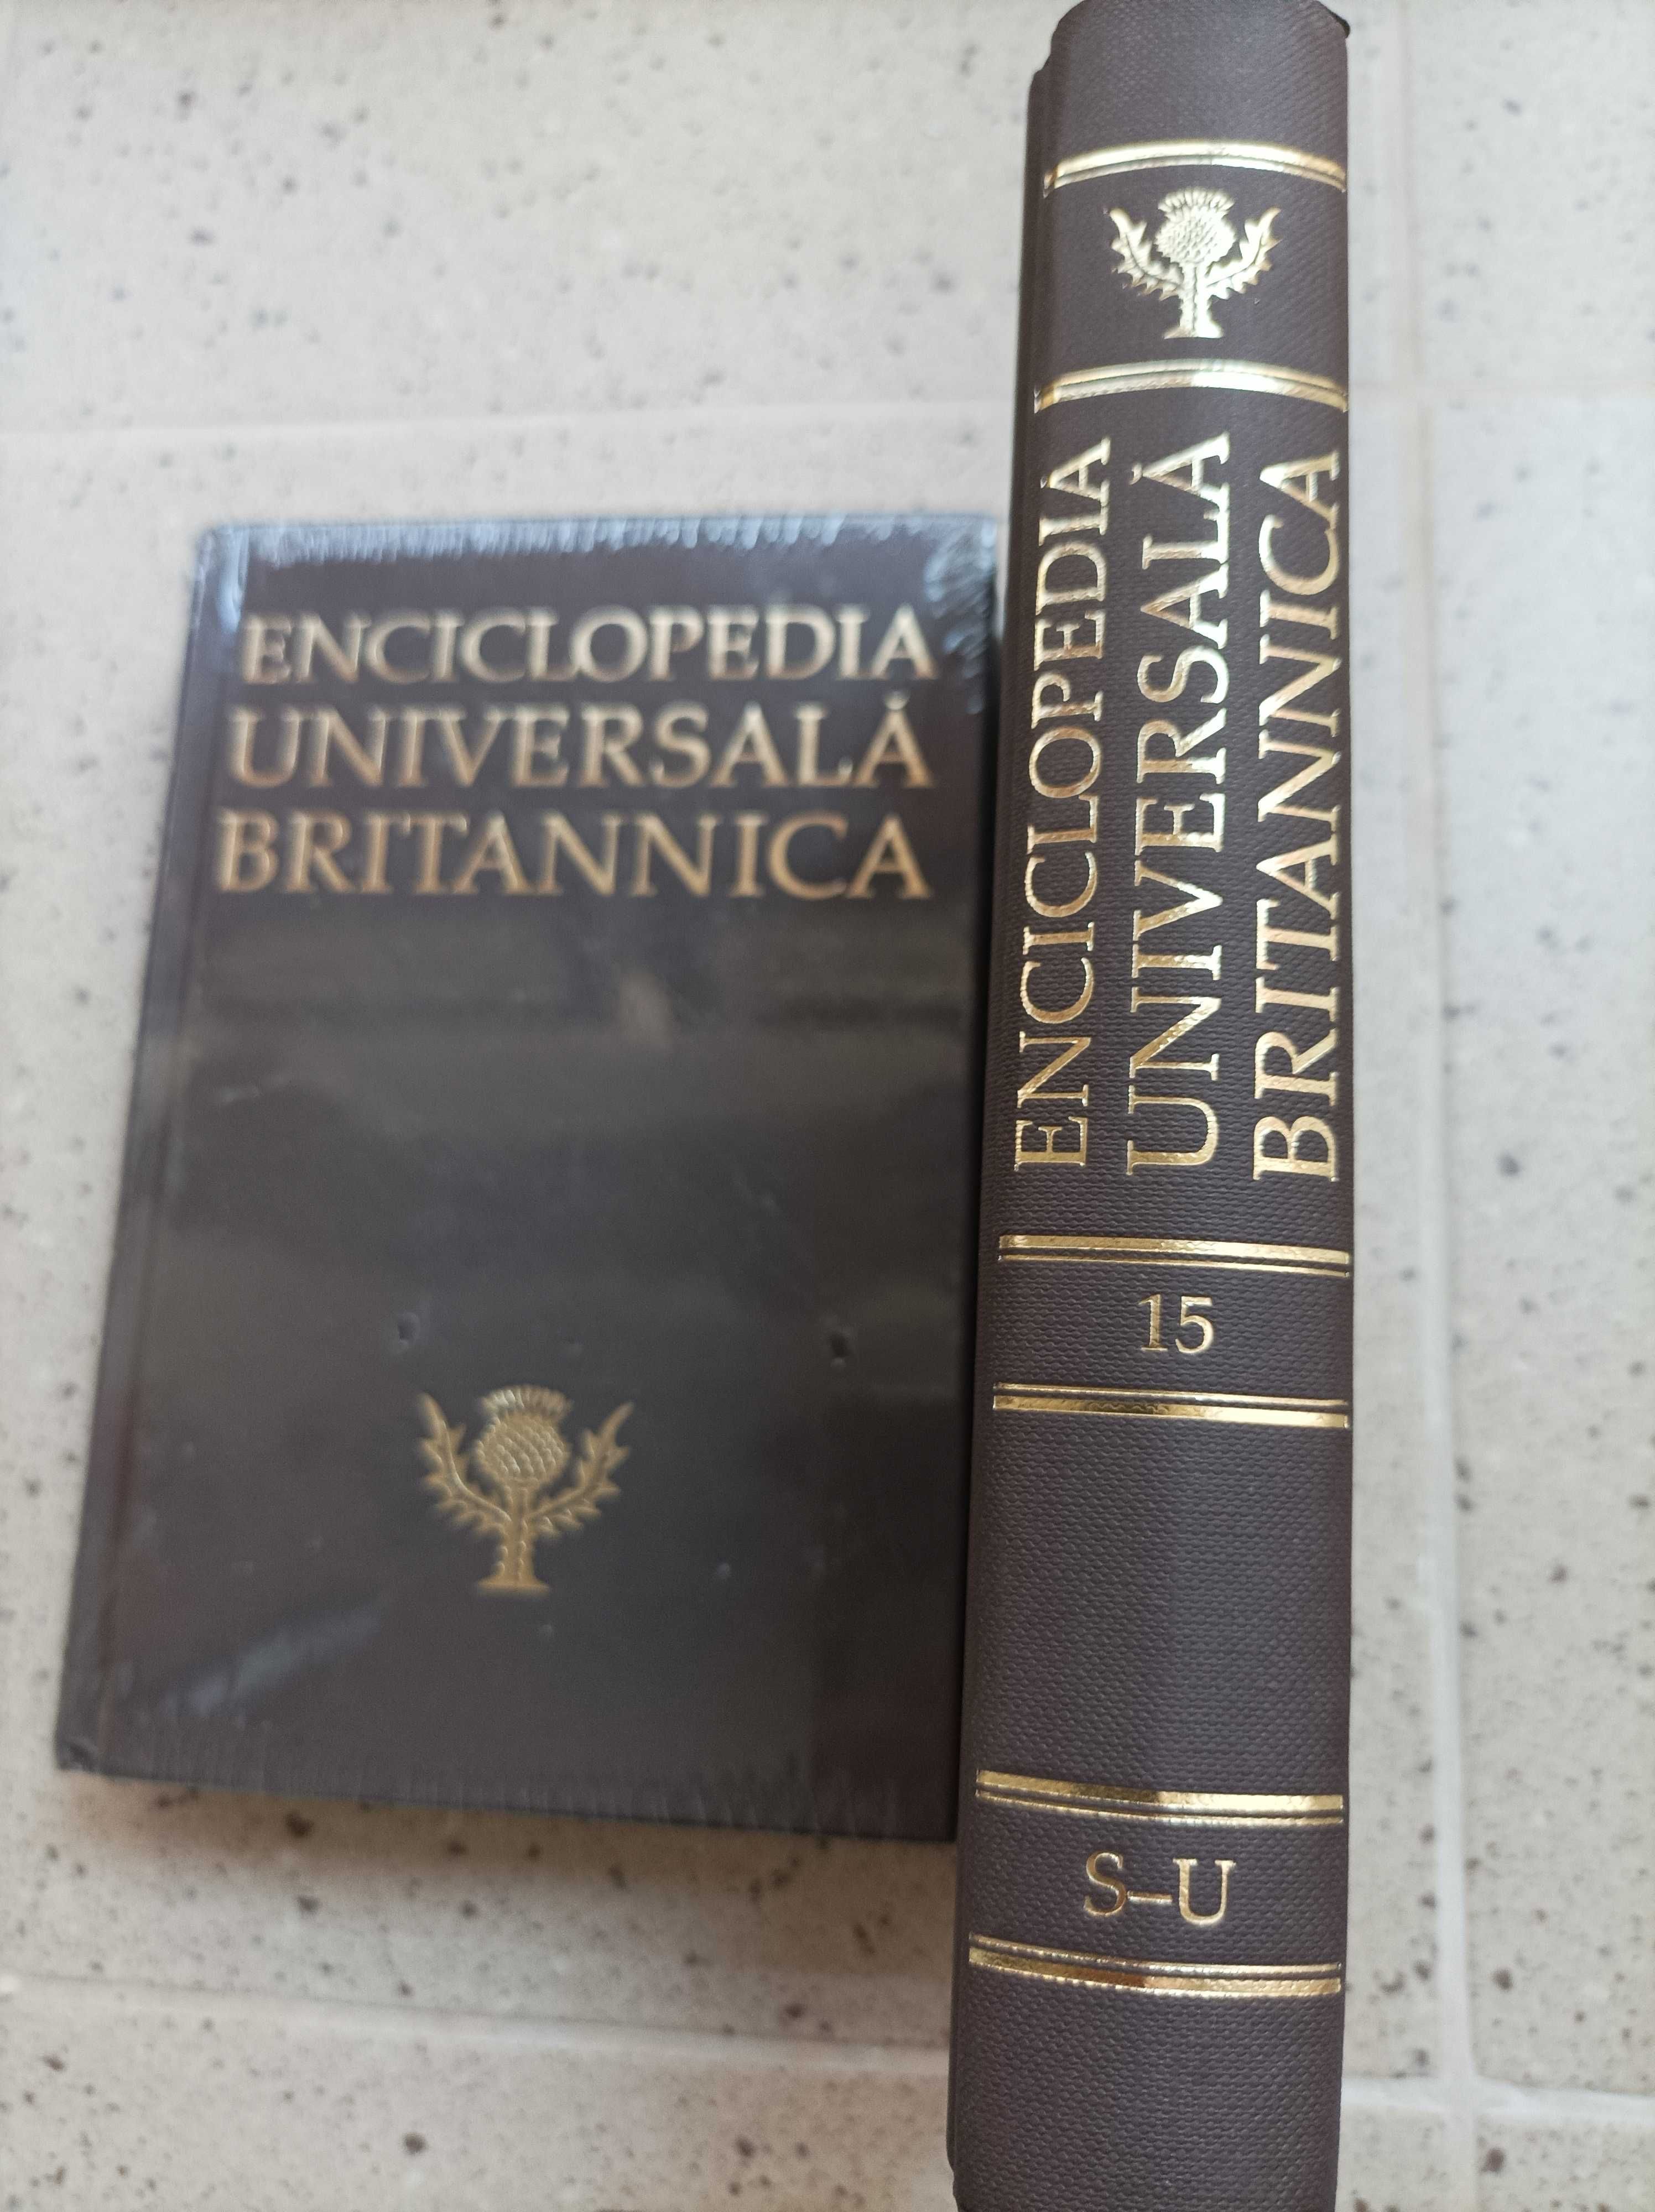 Enciclopedia universala britanica, vol.15, S-U.